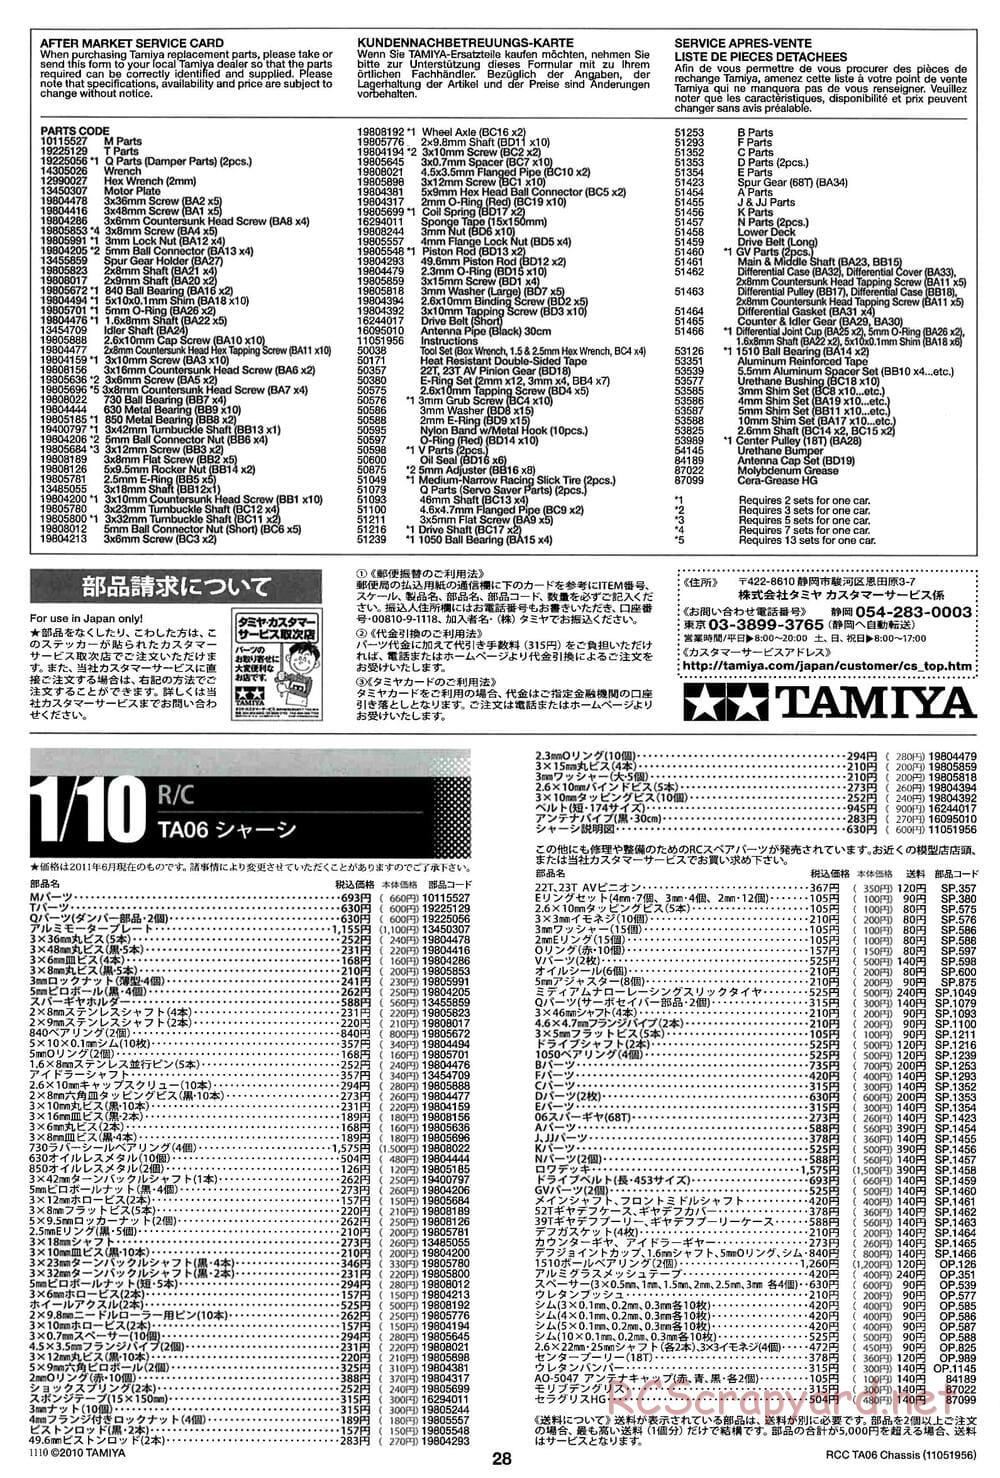 Tamiya - TA06 Chassis - Manual - Page 28